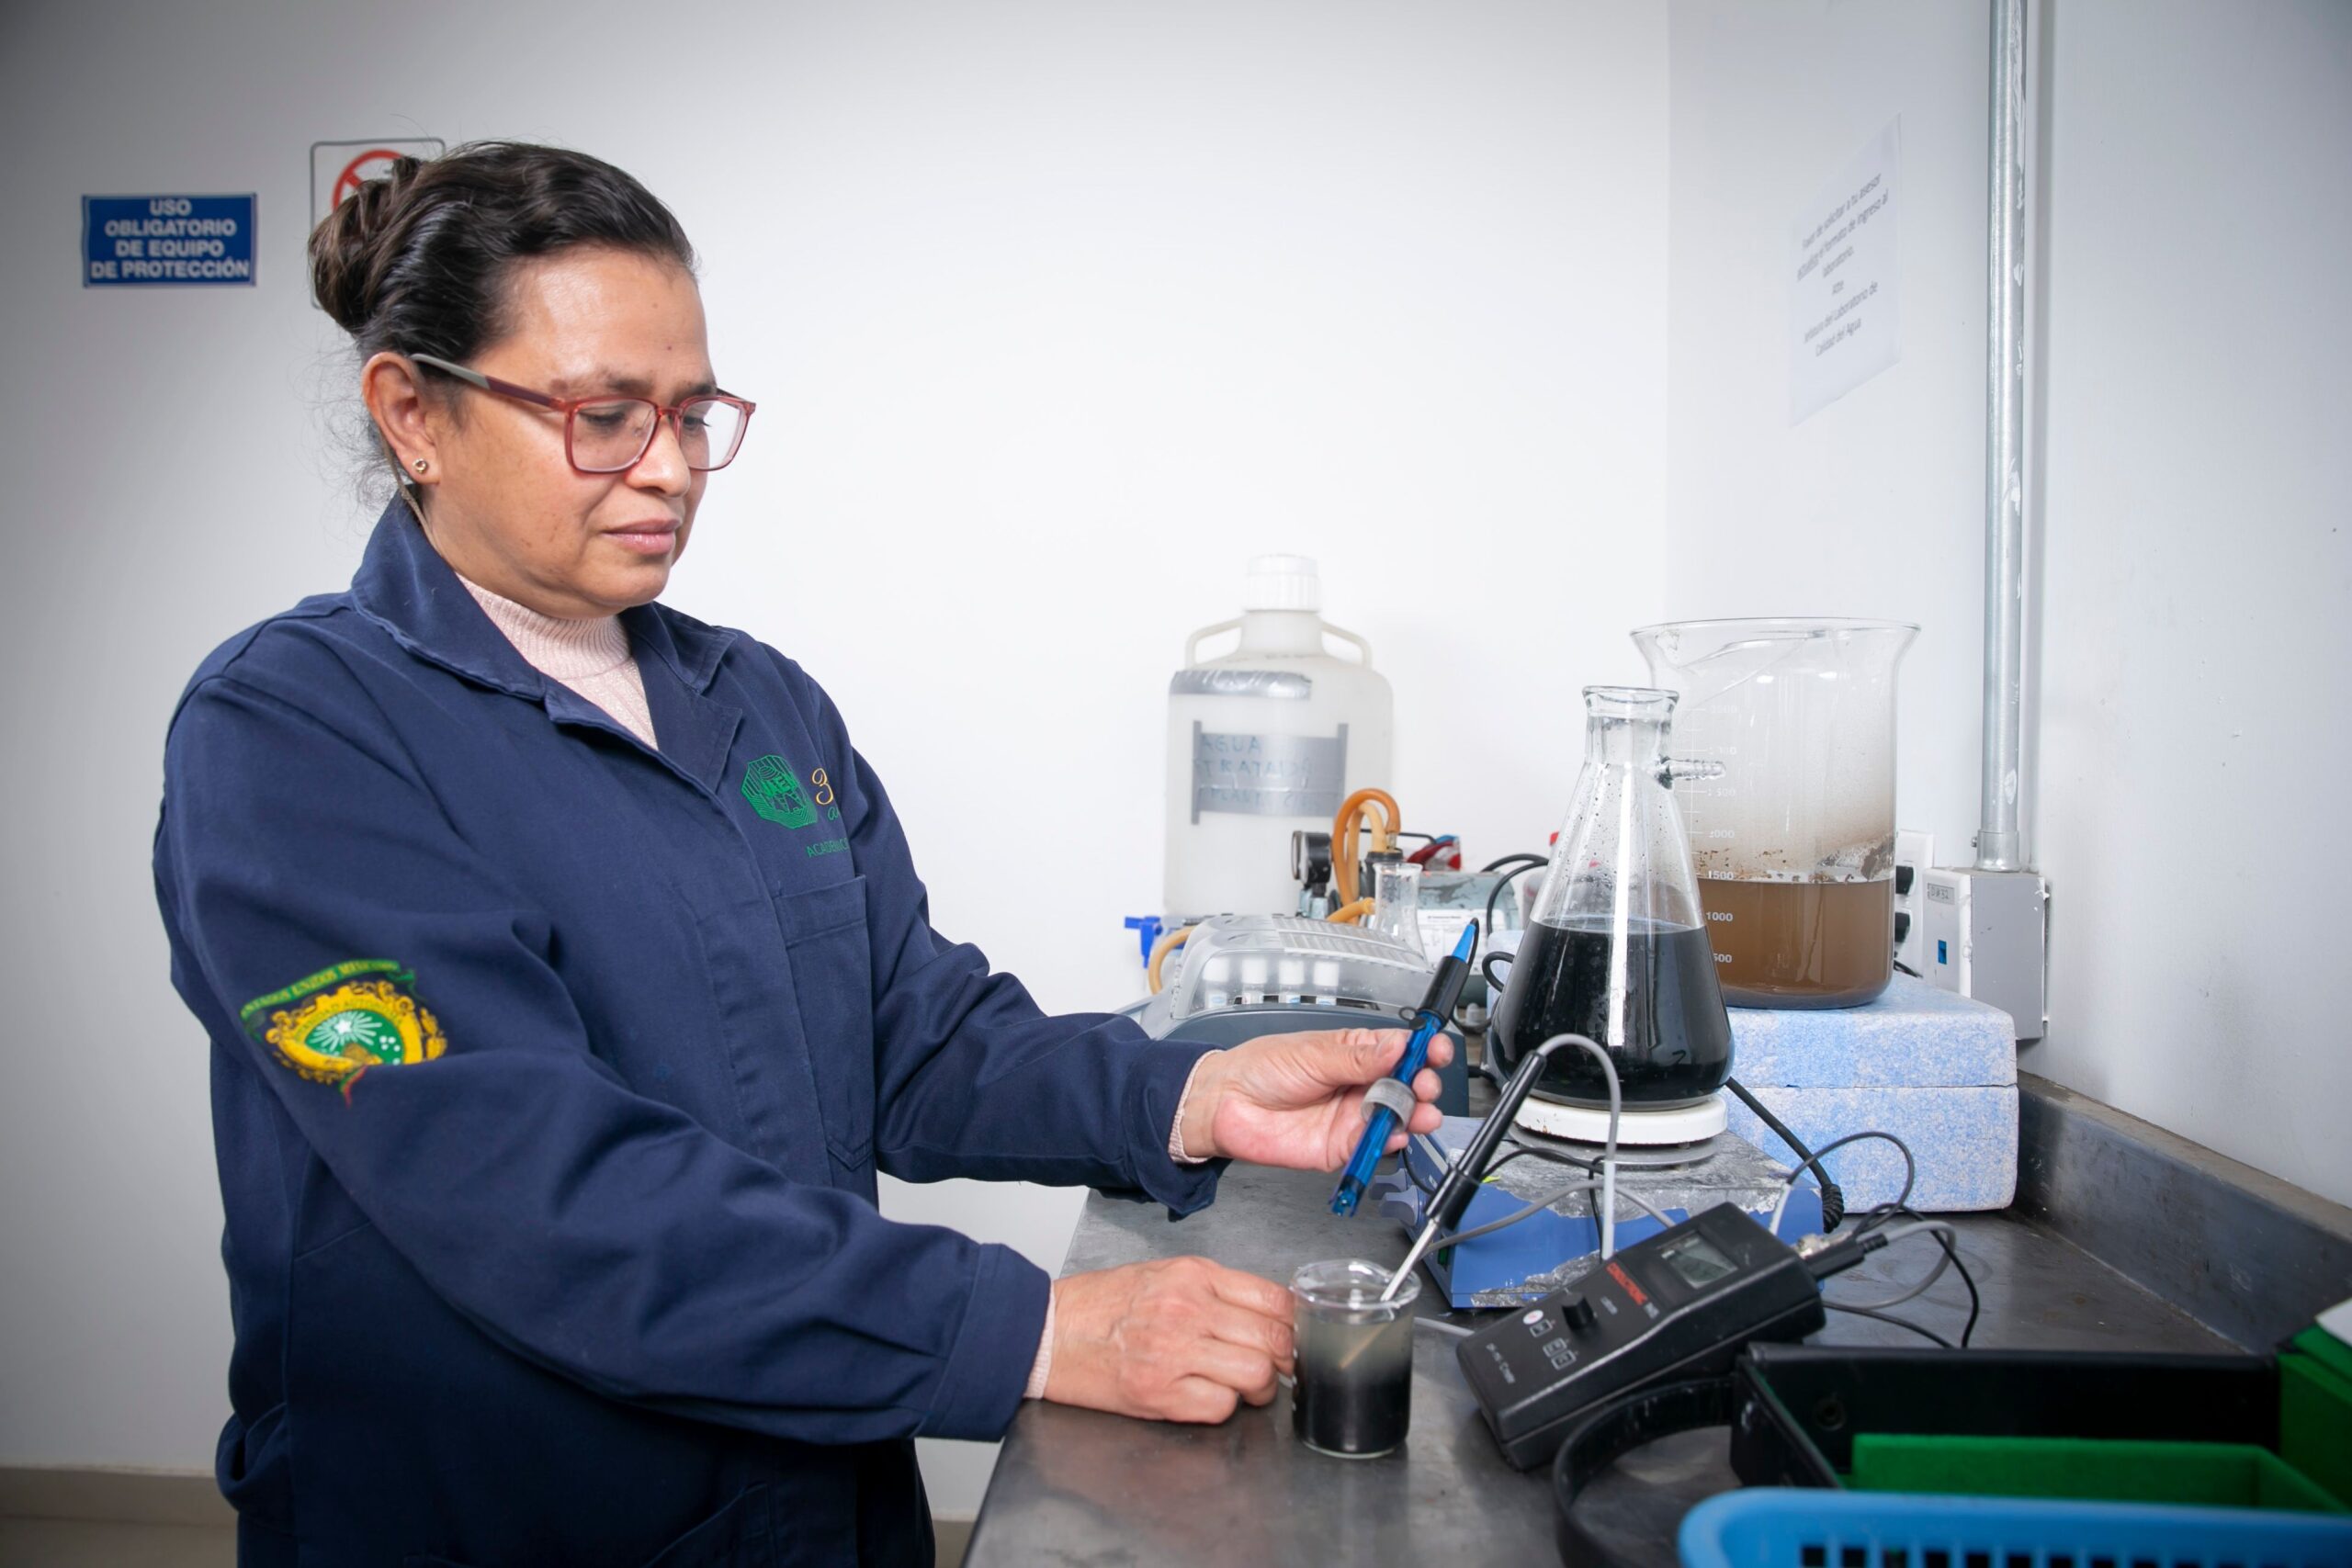 Mujeres en la ciencia / Reactor anaerobio, alternativa en el tratamiento de aguas residuales: UAEMéx